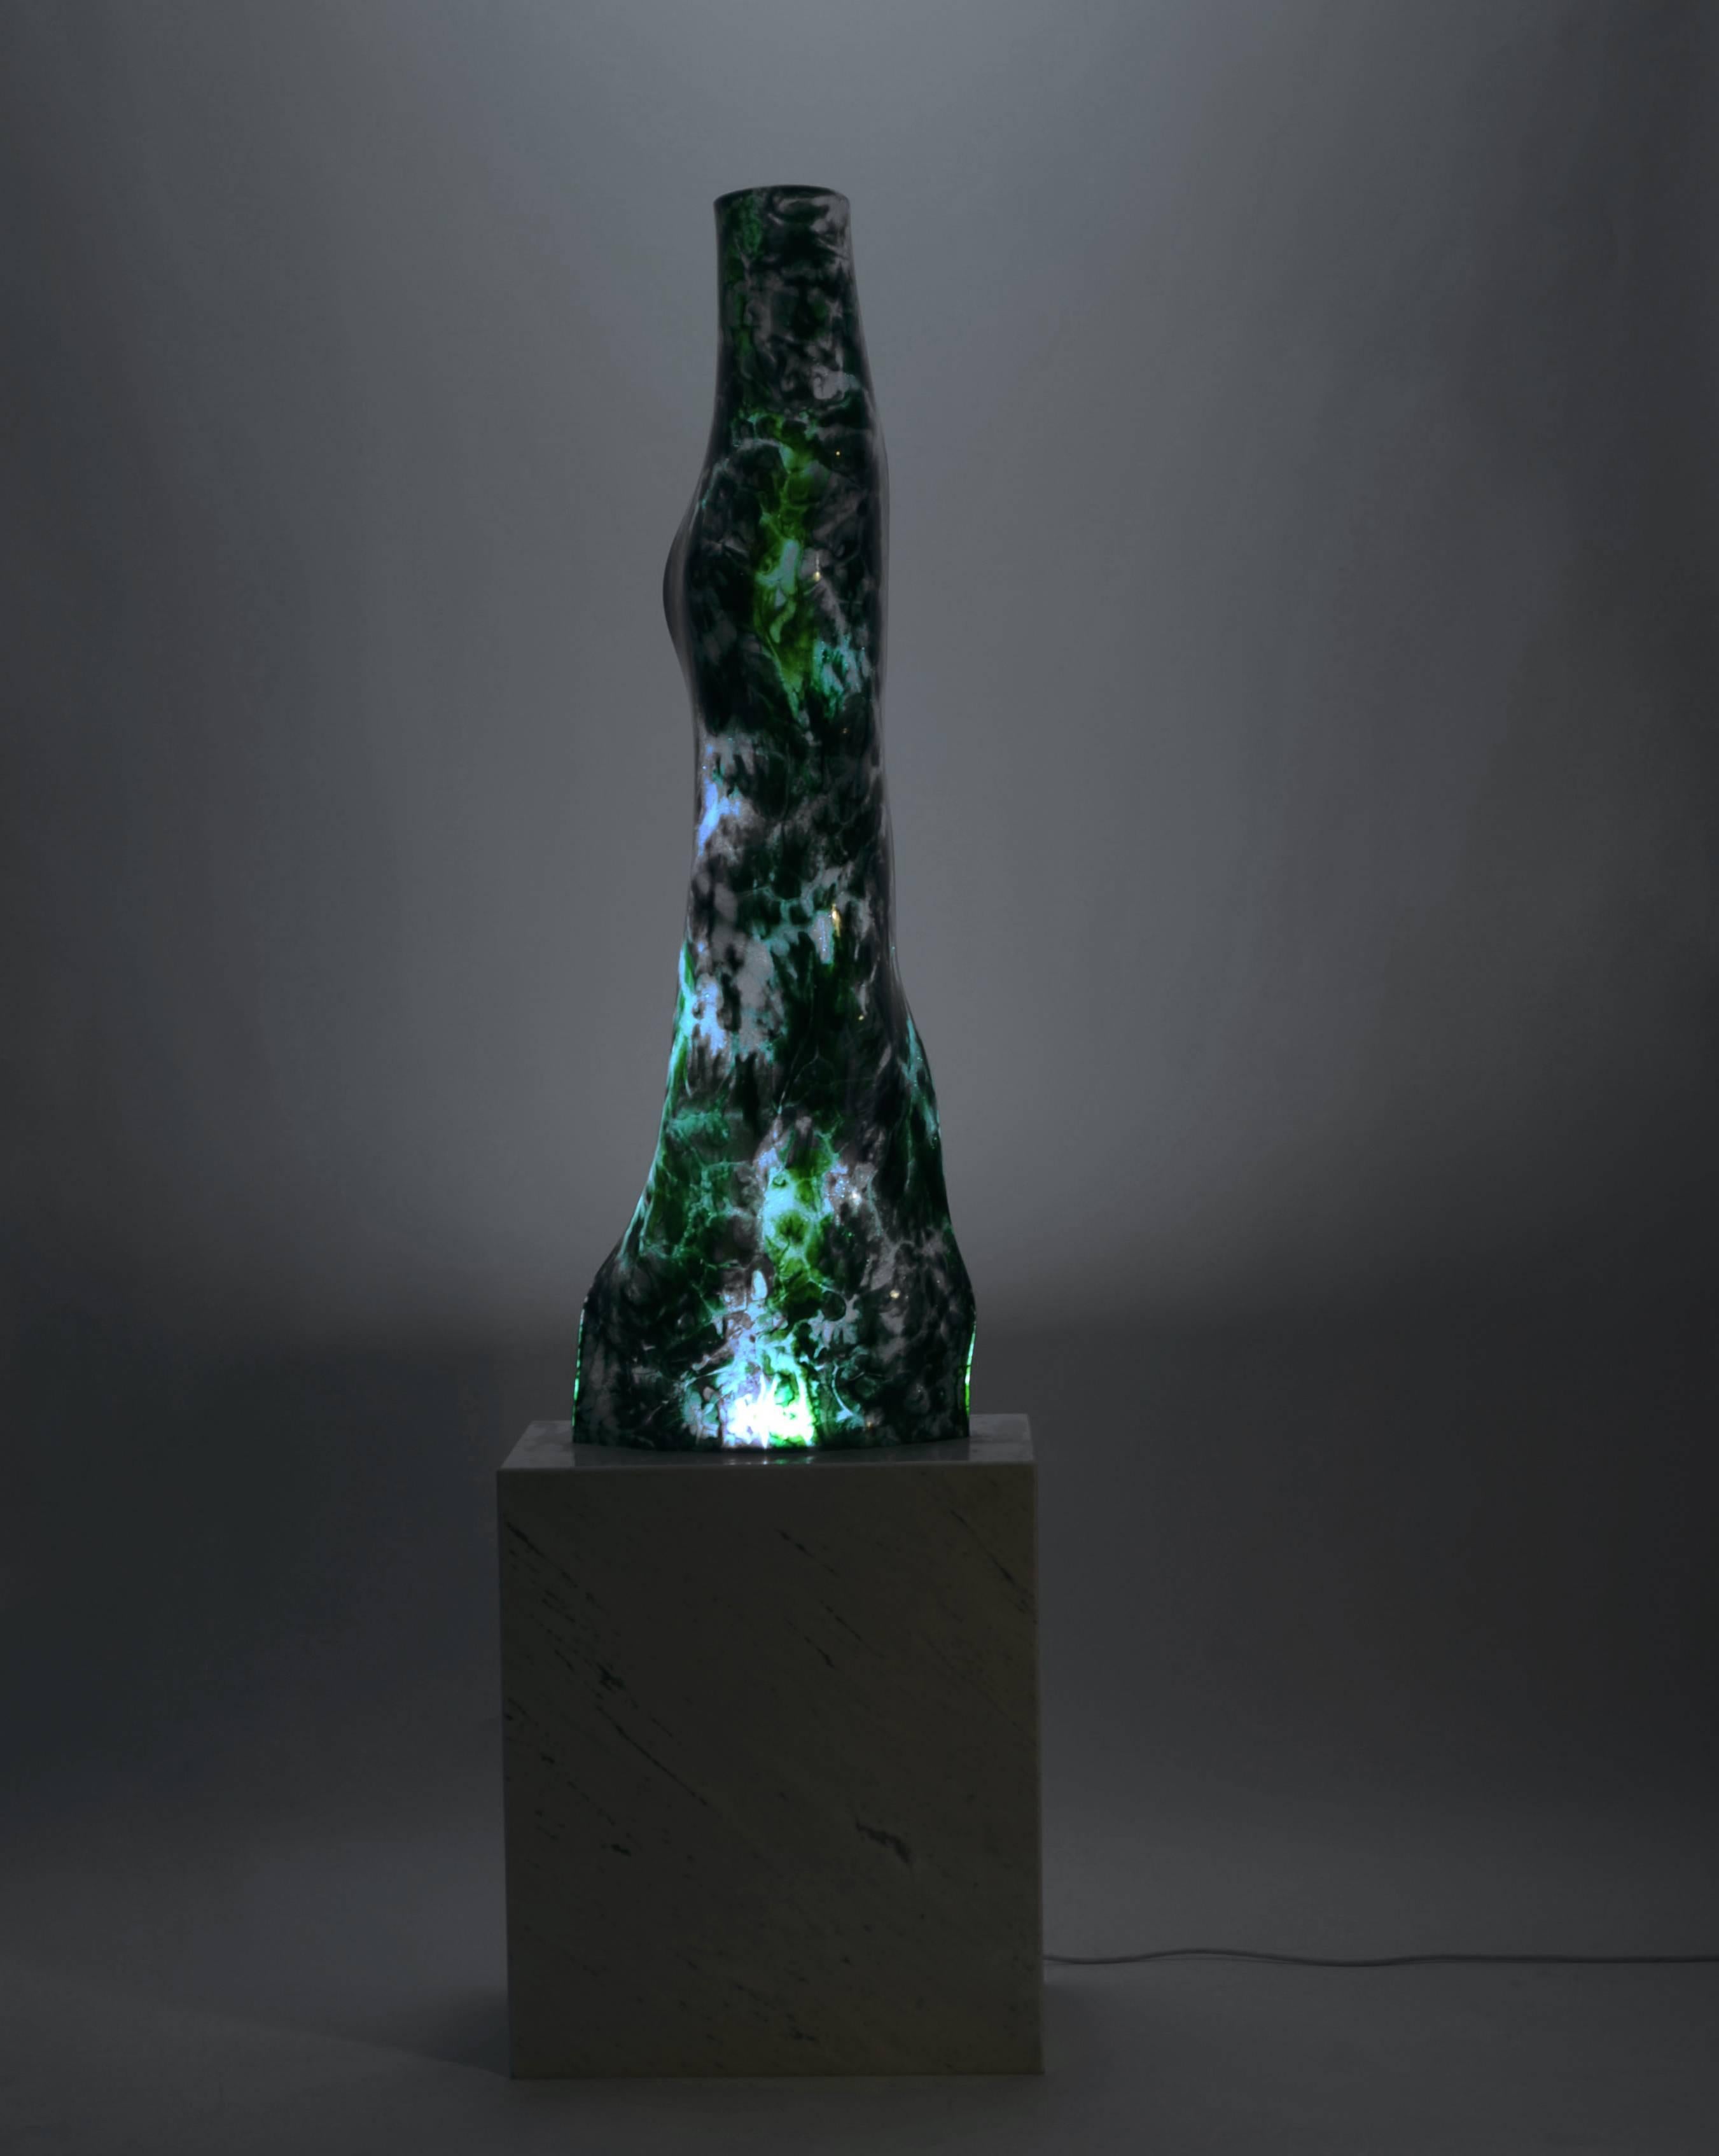 Dieses Stück aus gekochtem Glas gehört zur Kollektion Jimmiz Brains, die von Orfeo Quagliata mit exklusiven Techniken des Künstlers entworfen wurde. 100% handgefertigt mit hochwertigem Material. 
Organische Lampe mit Marmorsockel.
Dieses elegante